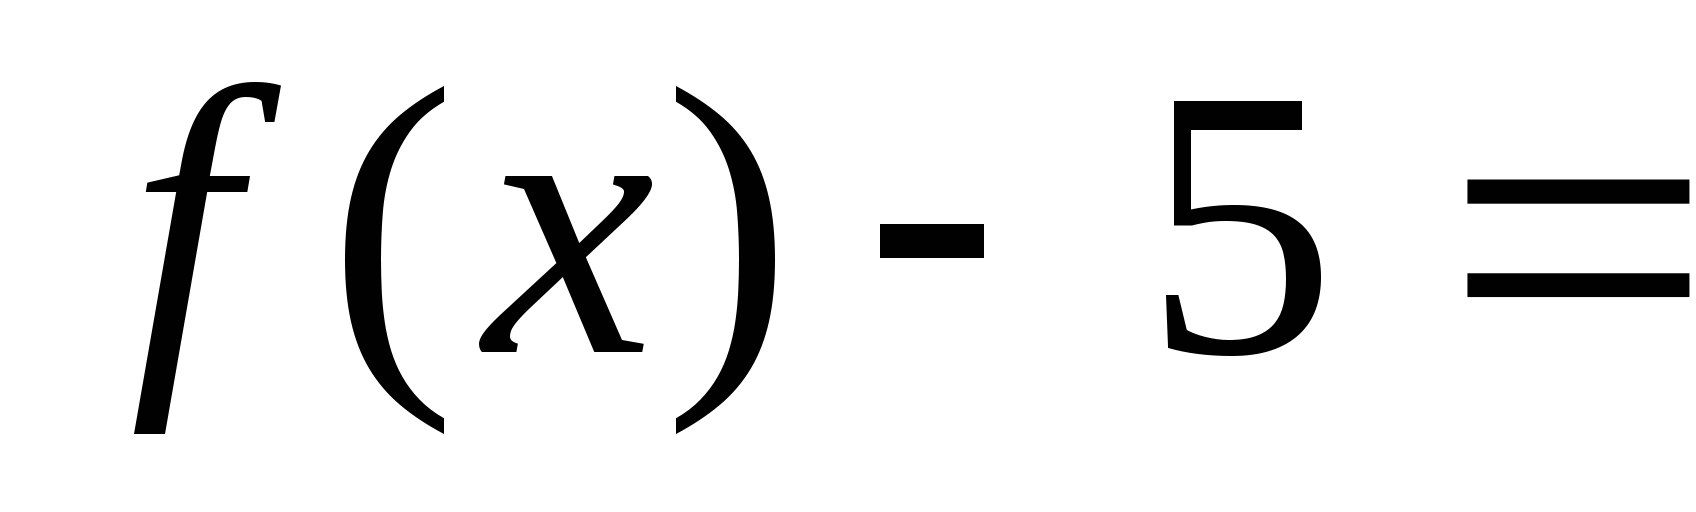 Конспект урока по алгебре Функции y=sinx и y=cosx их свойства и график